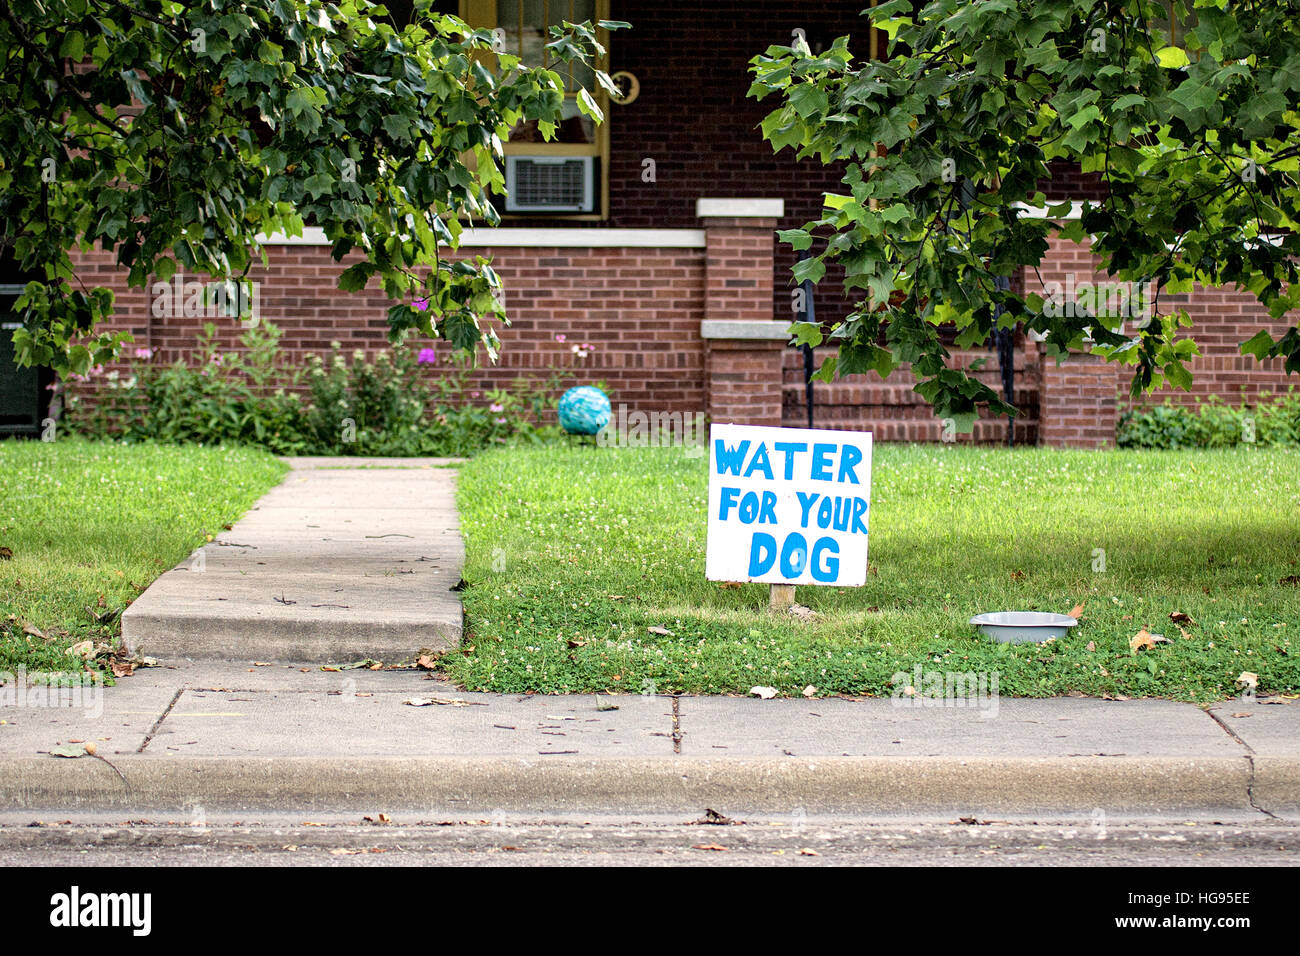 Yard-zeichen Wasser für Ihren Hund, kleine Stadt nostalgische Stockfoto